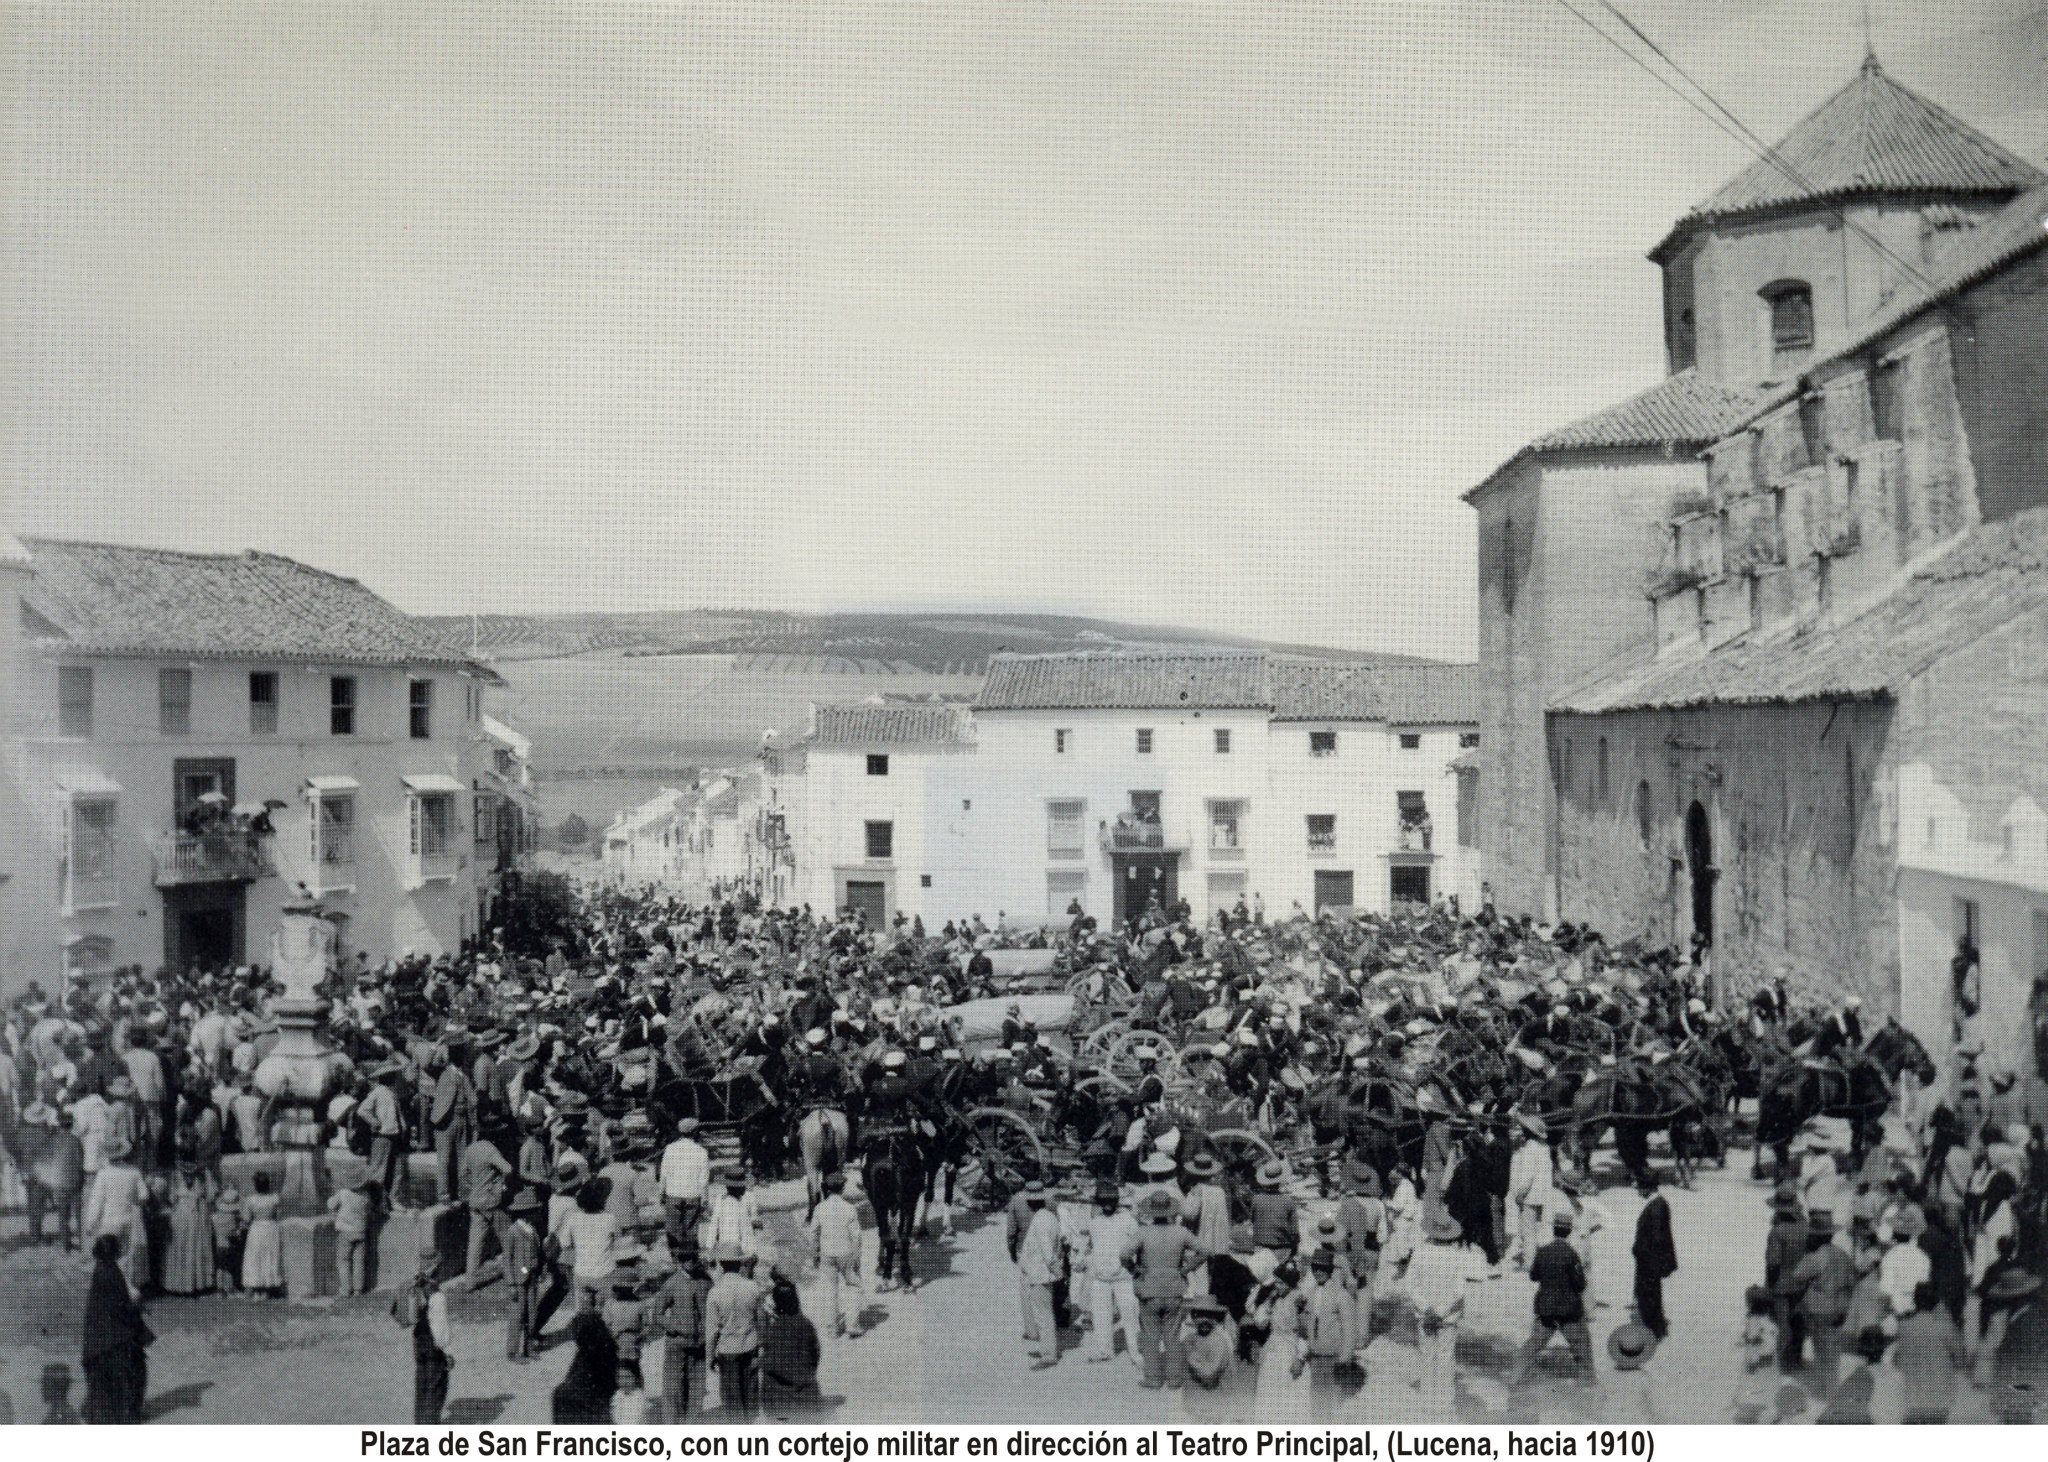 Llanete San francisco. Desfile en dirección al Teatro Principal 1910